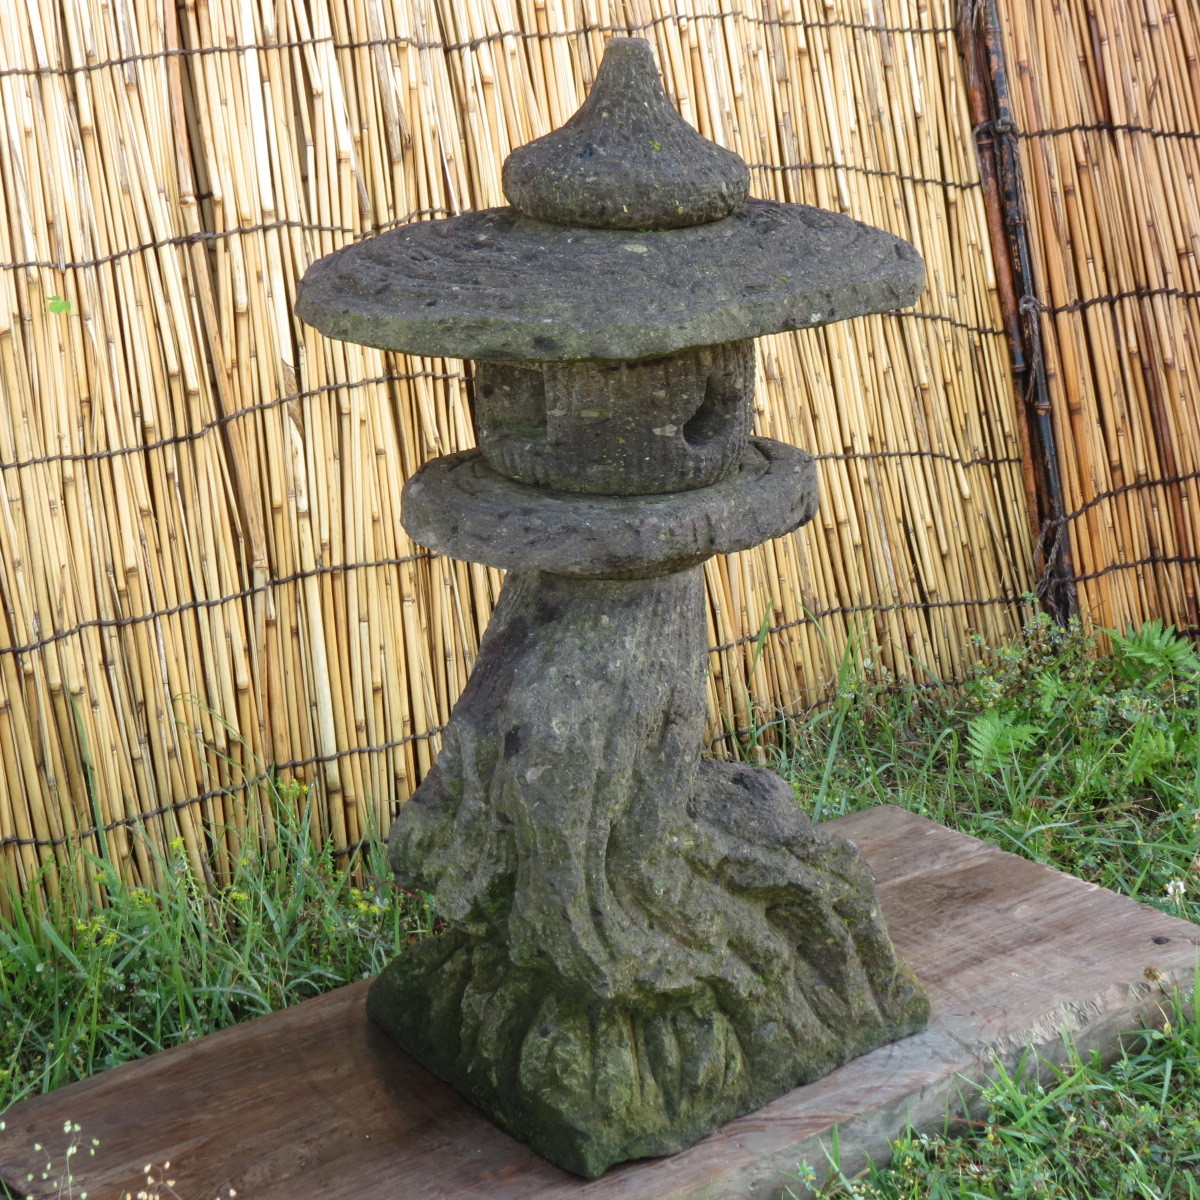  камень лампа . высота 70.5. масса 41. природа дерево type Kyushu производство натуральный камень 